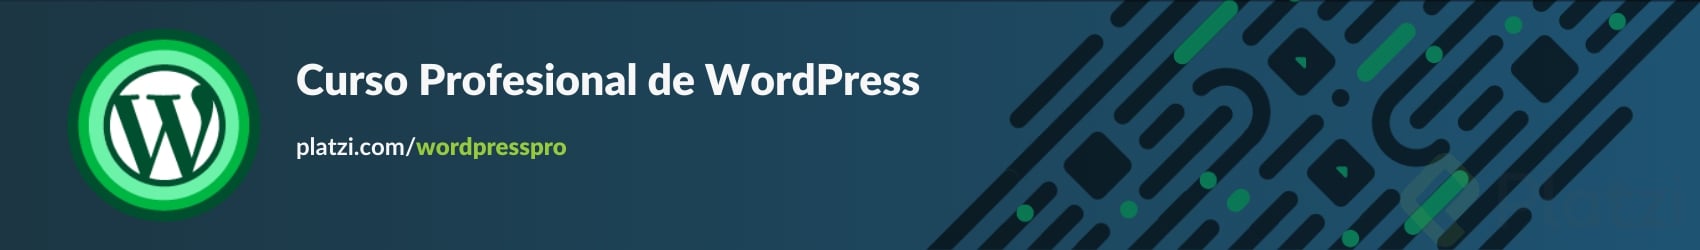 Curso Profesional de WordPress